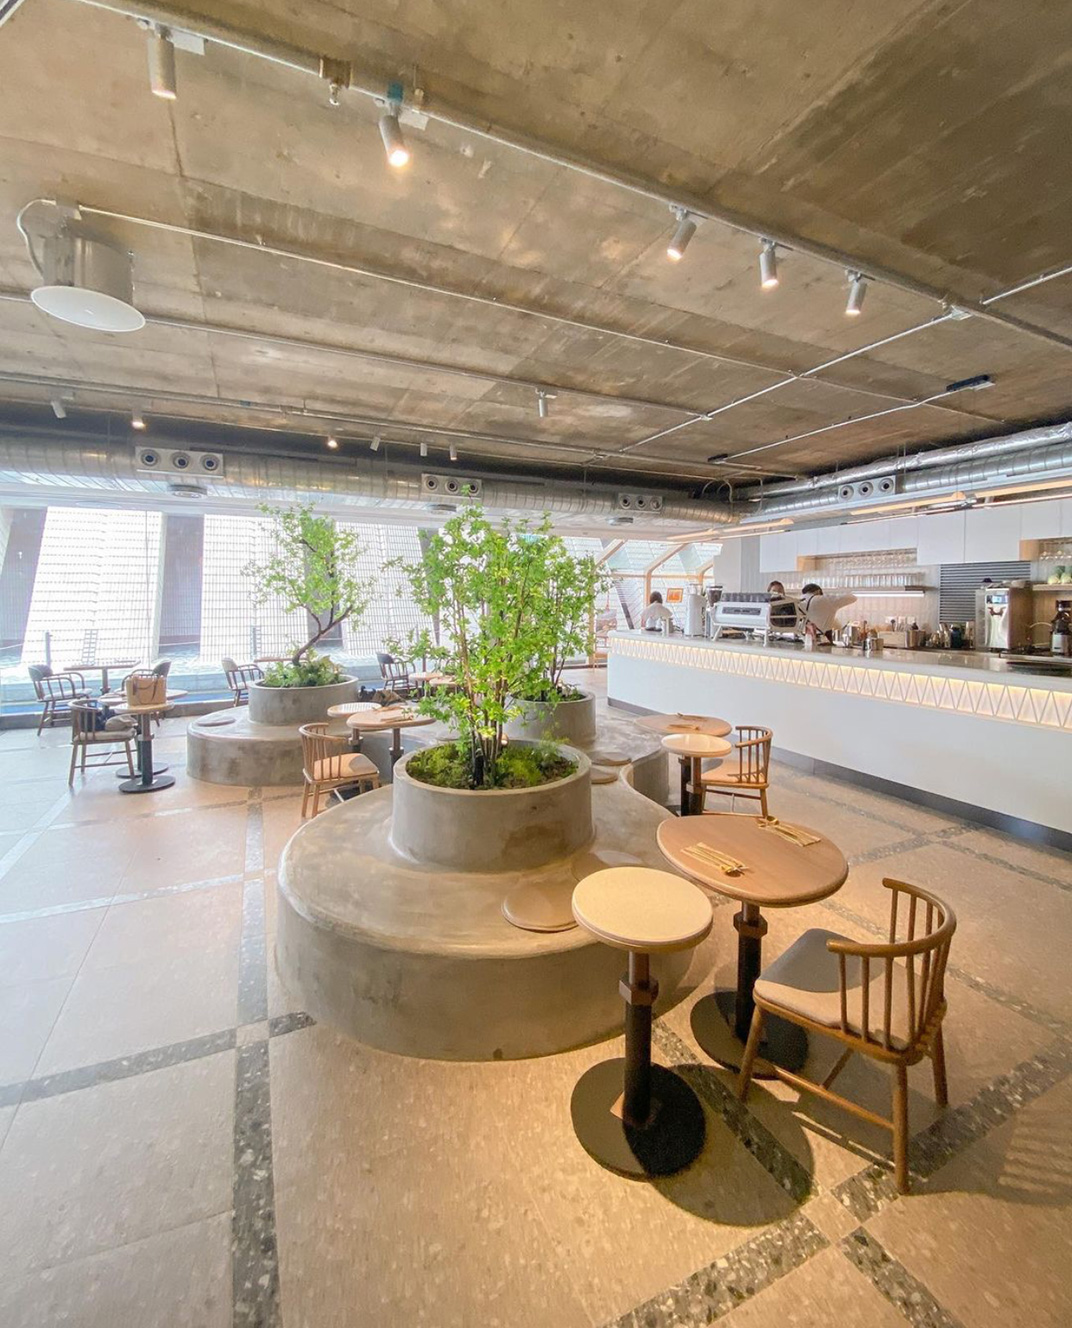 文化中心里的咖啡店 香港 咖啡店 展览 手工坊 音乐 电影 绿植 融合餐厅 logo设计 vi设计 空间设计